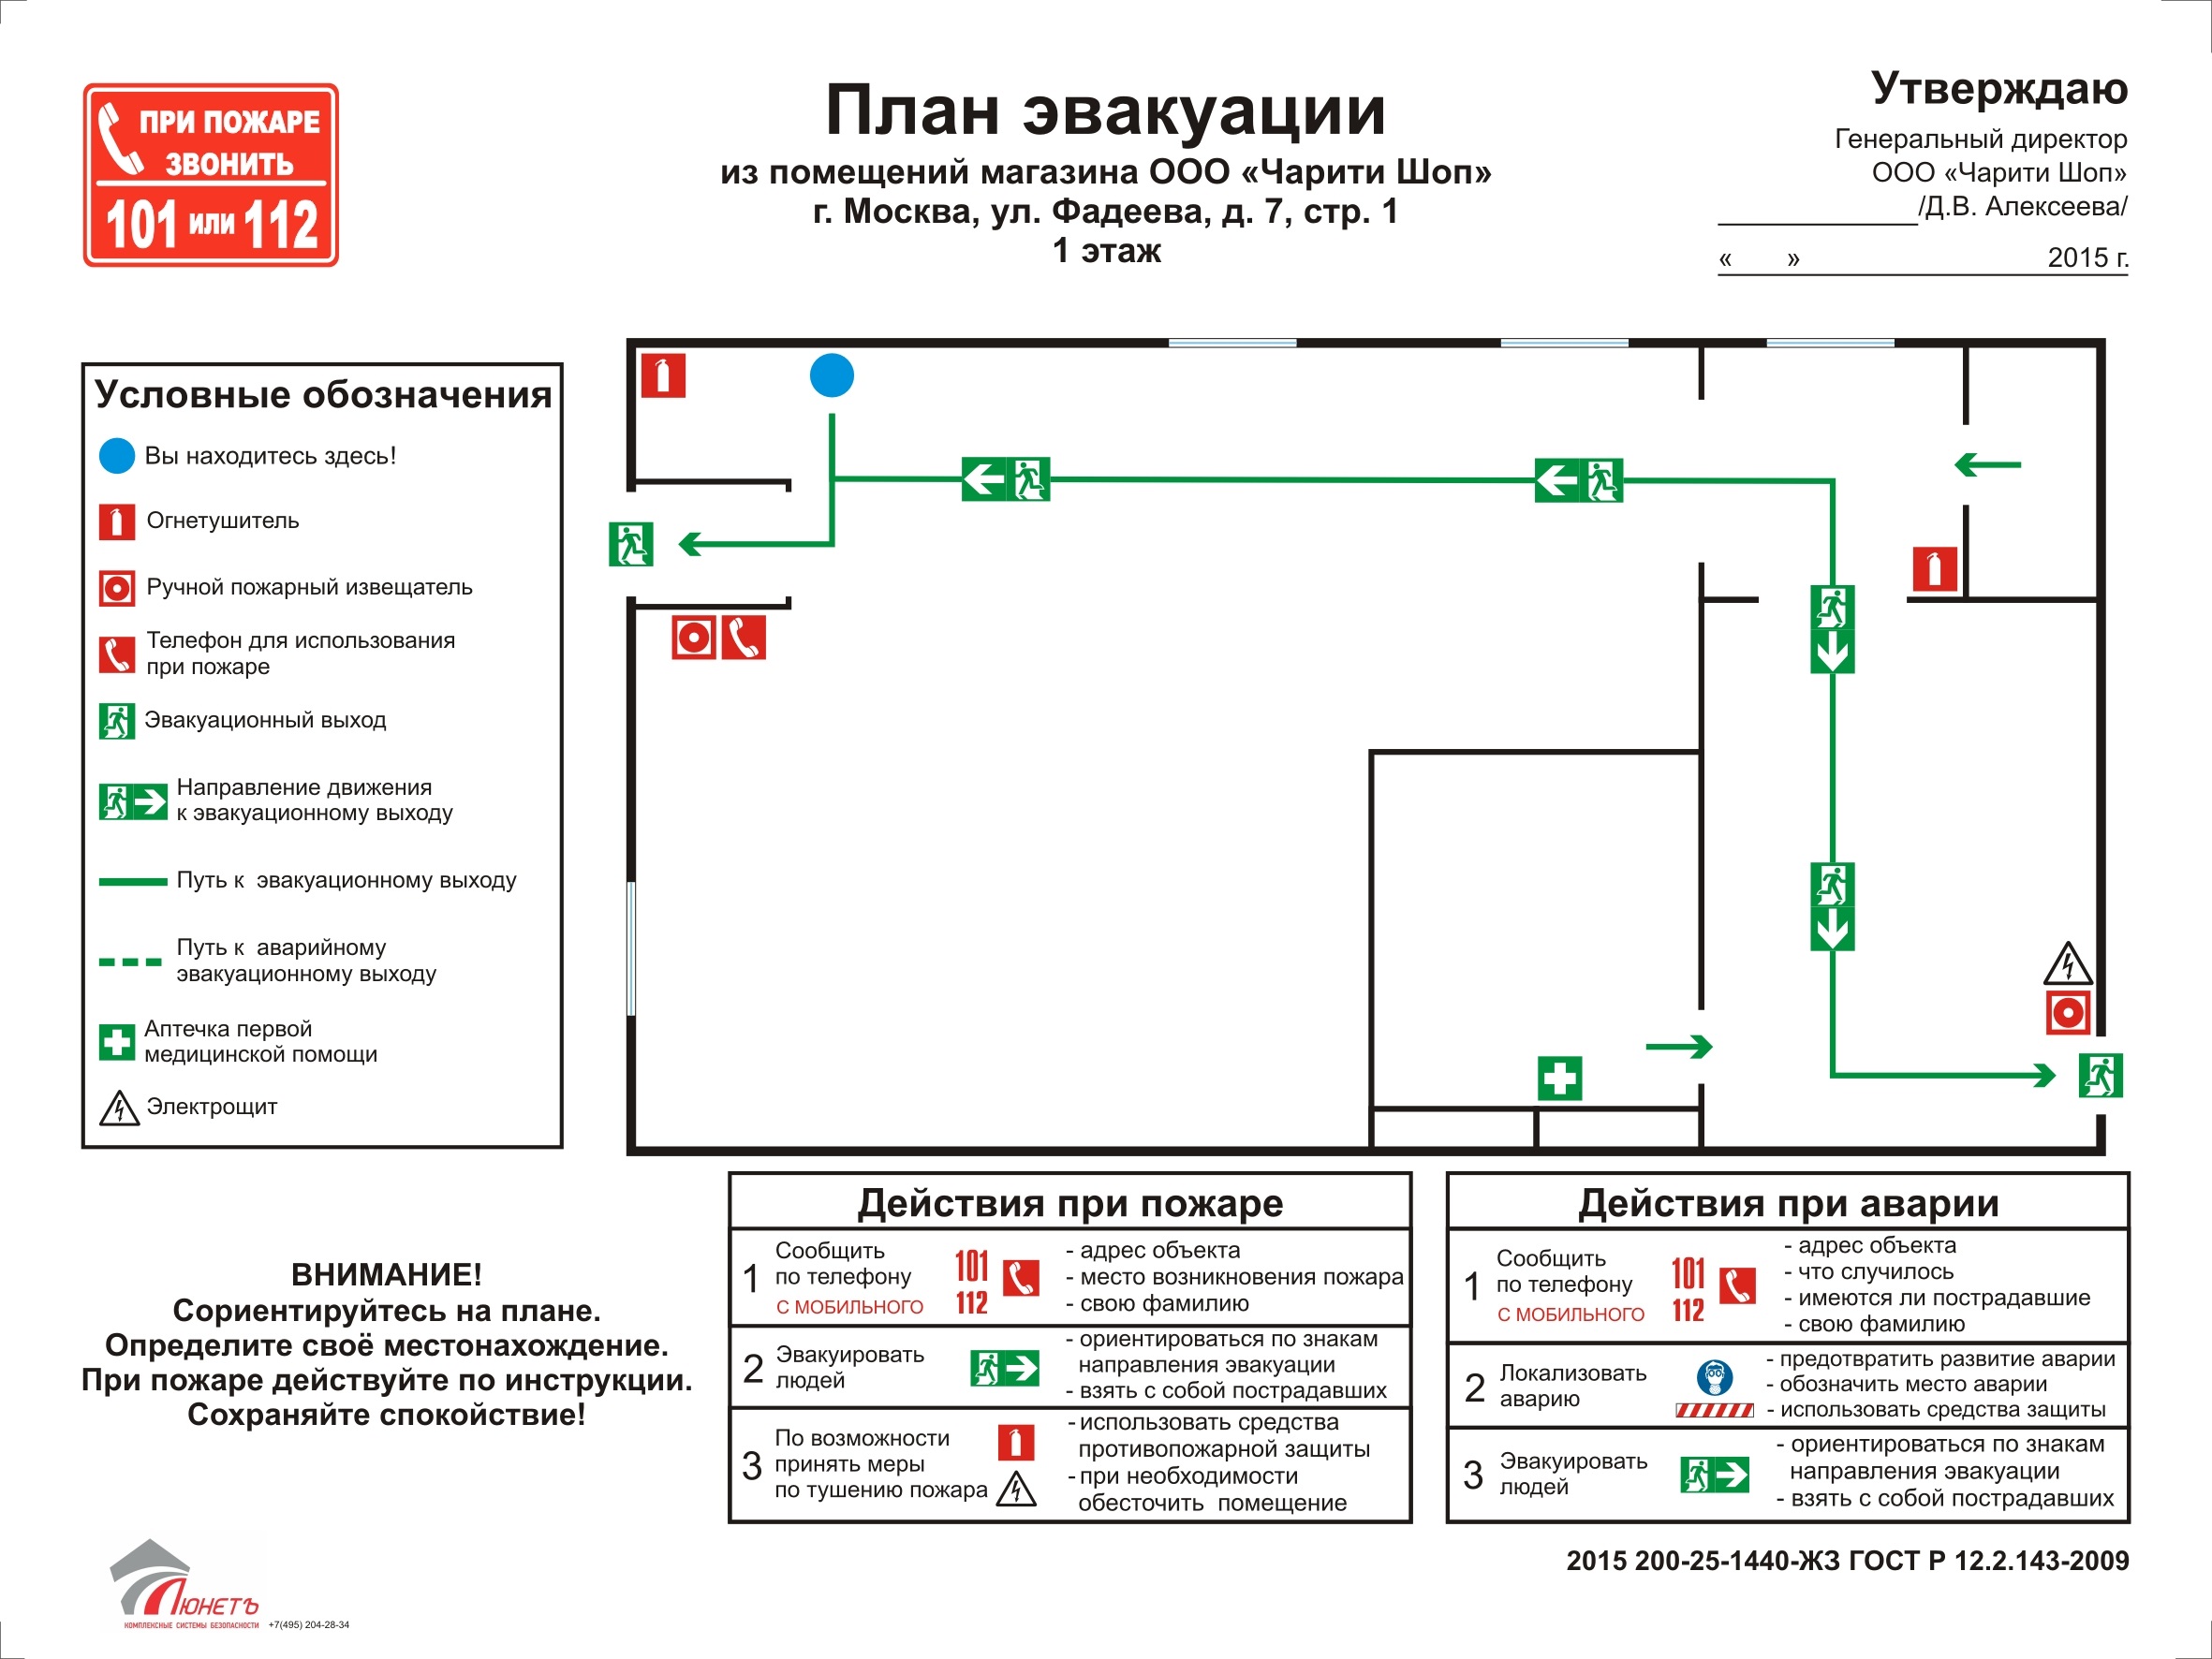 ГОСТ Р 12.2.143-2009 планы эвакуации. Пример плана эвакуации при пожаре по ГОСТУ. Пример плана эвакуации АЗС.